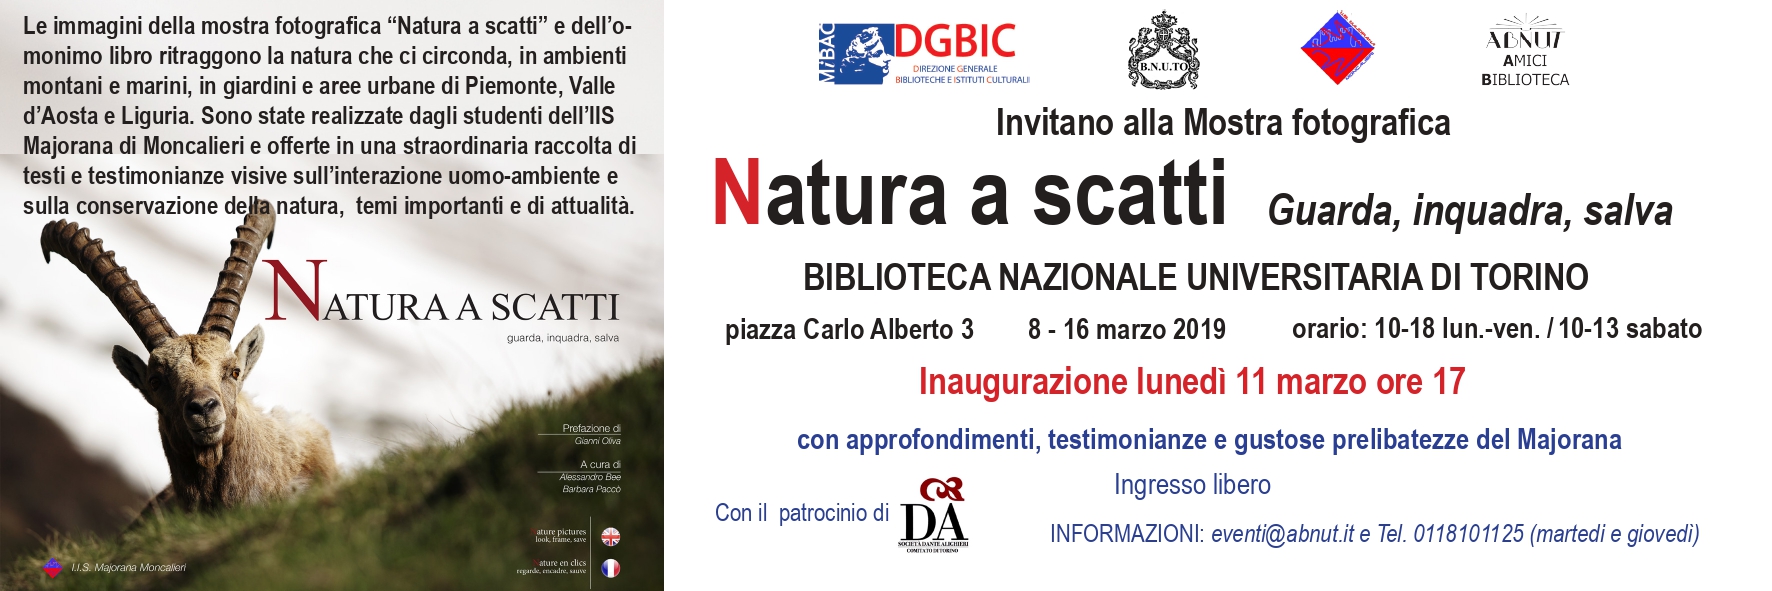 Mostra “Natura a scatti” 8-16/3/2019 Biblioteca Nazionale